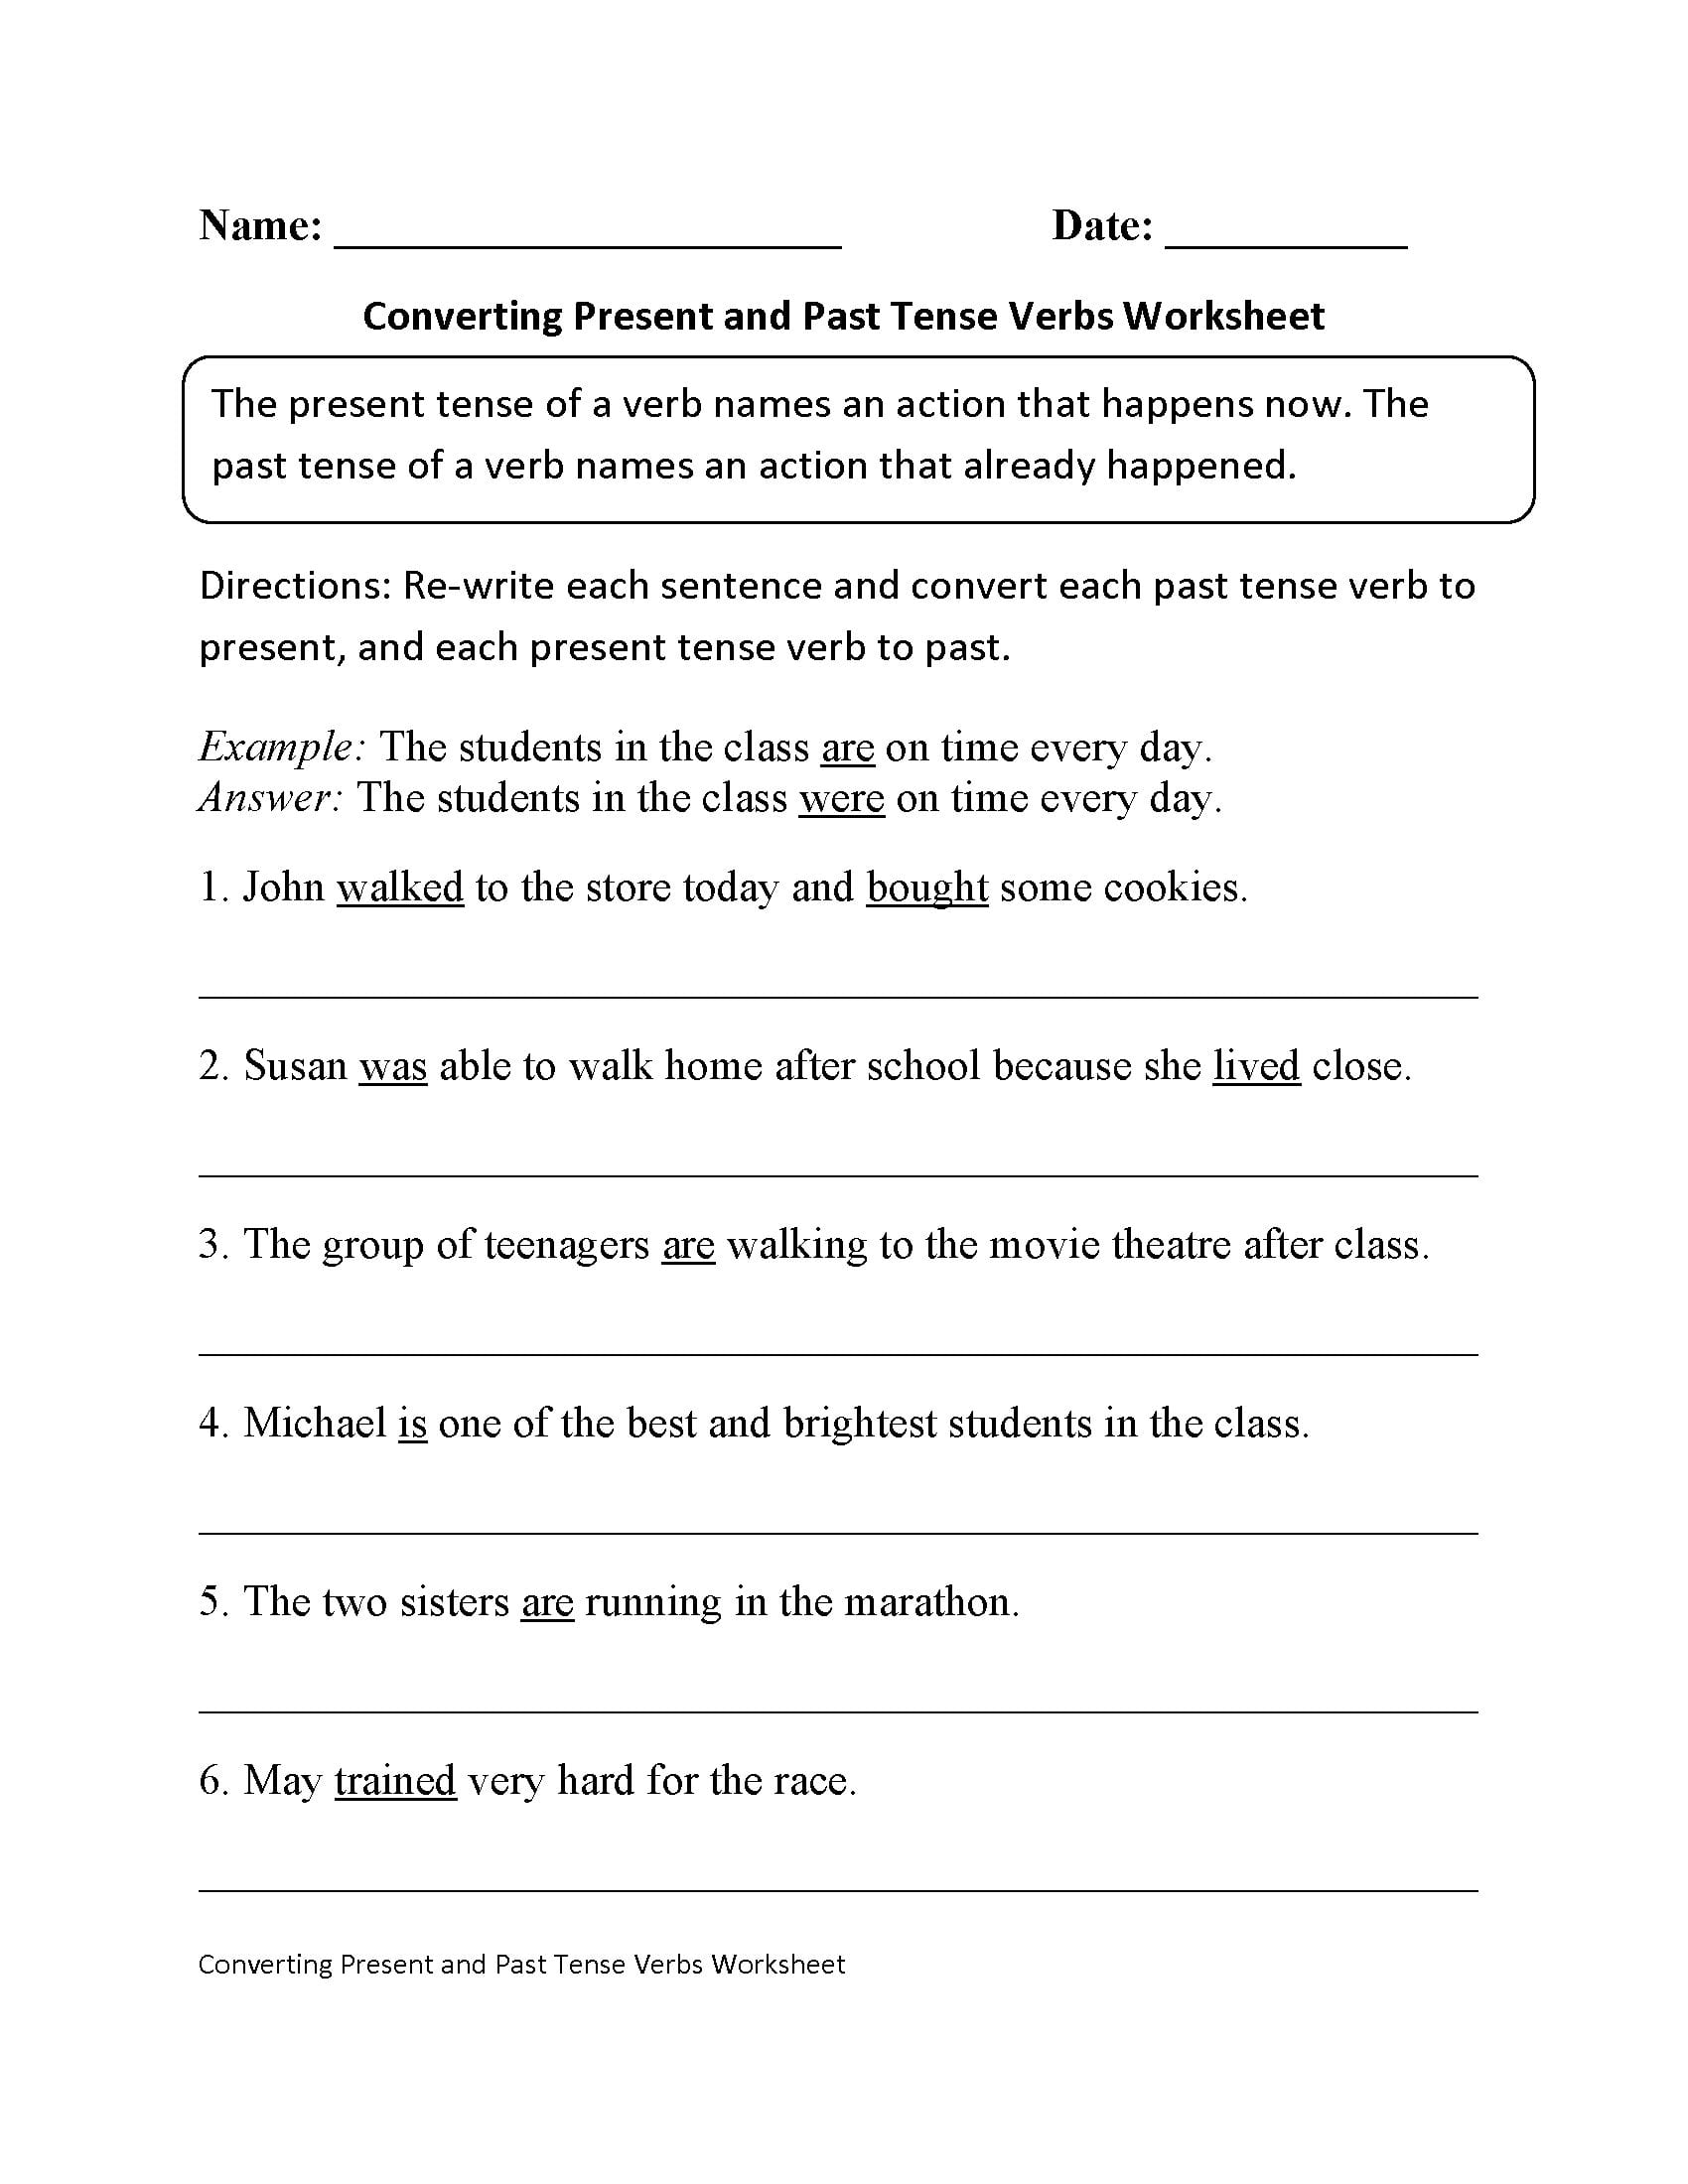 Verbs Worksheets  Verb Tenses Worksheets For Past Tense Verbs Worksheets